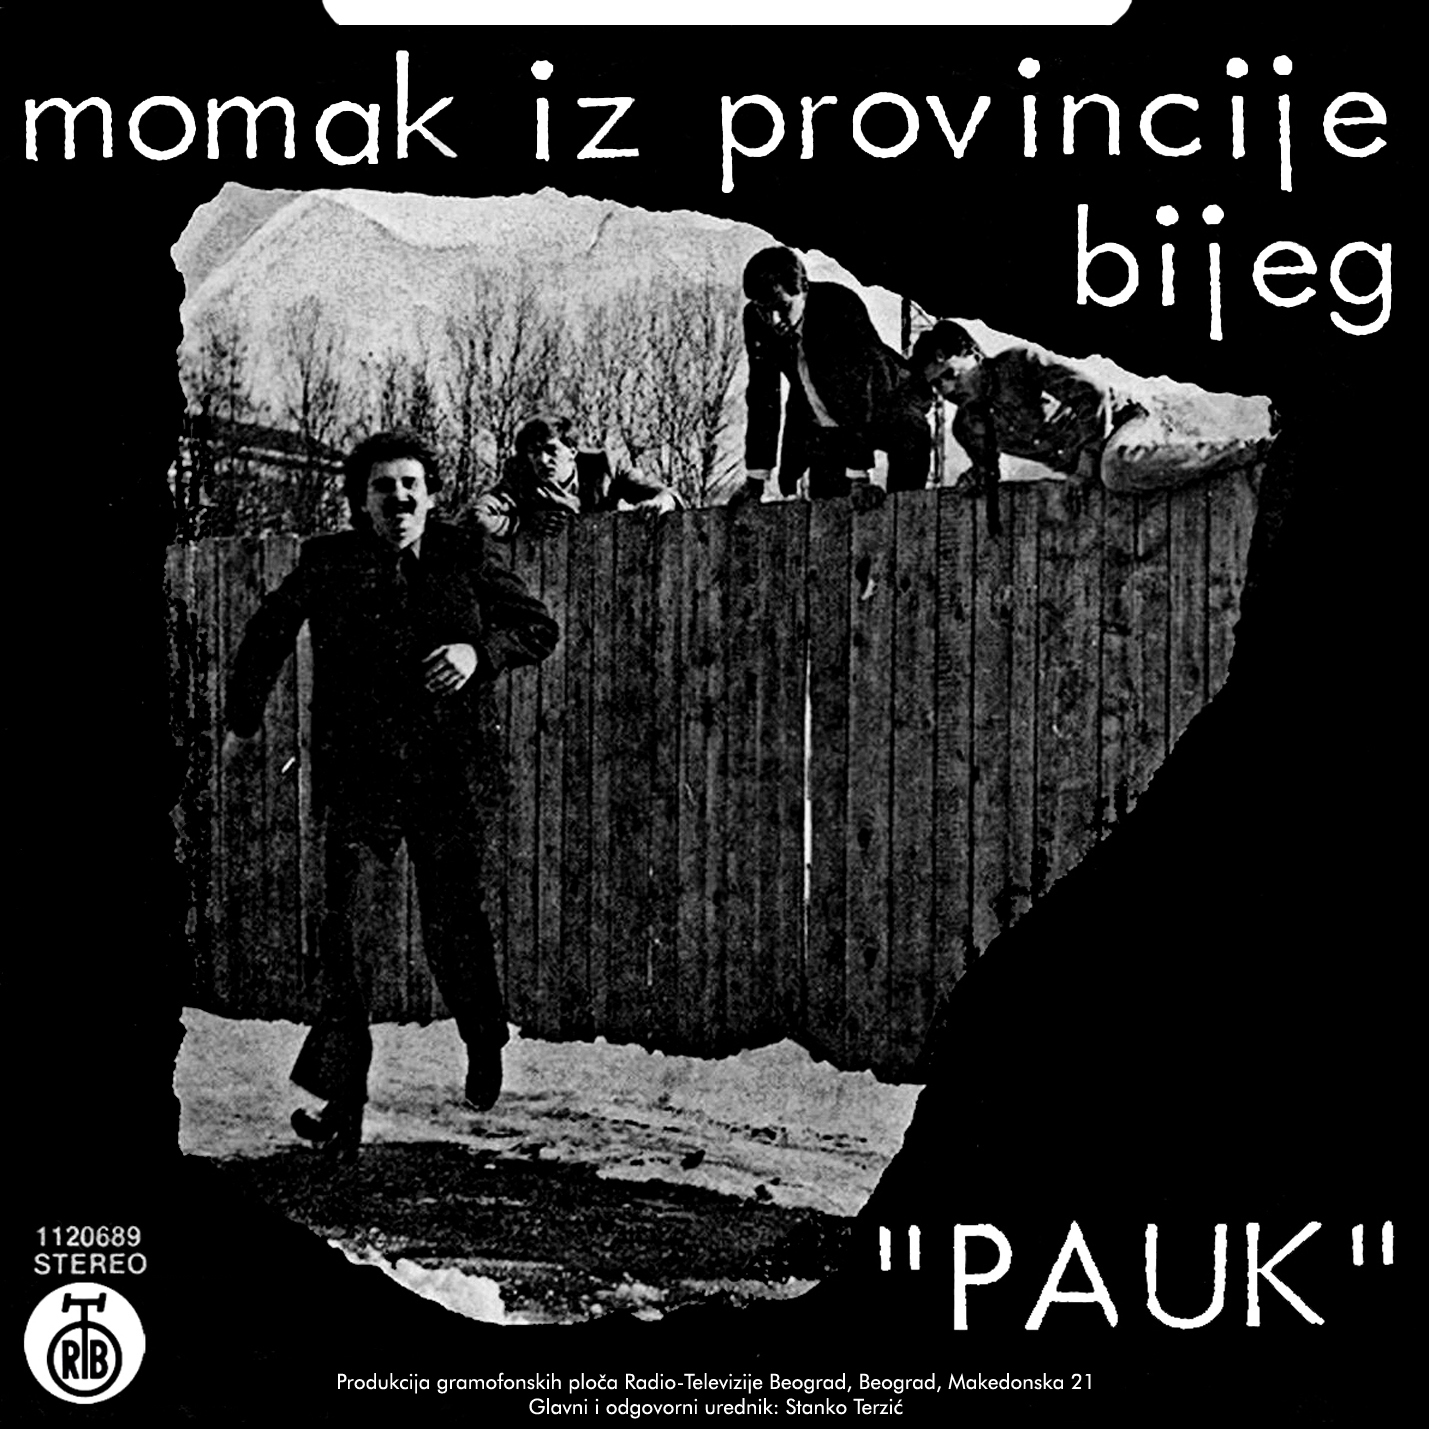 JUGO ROCK FOREVER PAUK Momak Iz Provincije 1981 Single